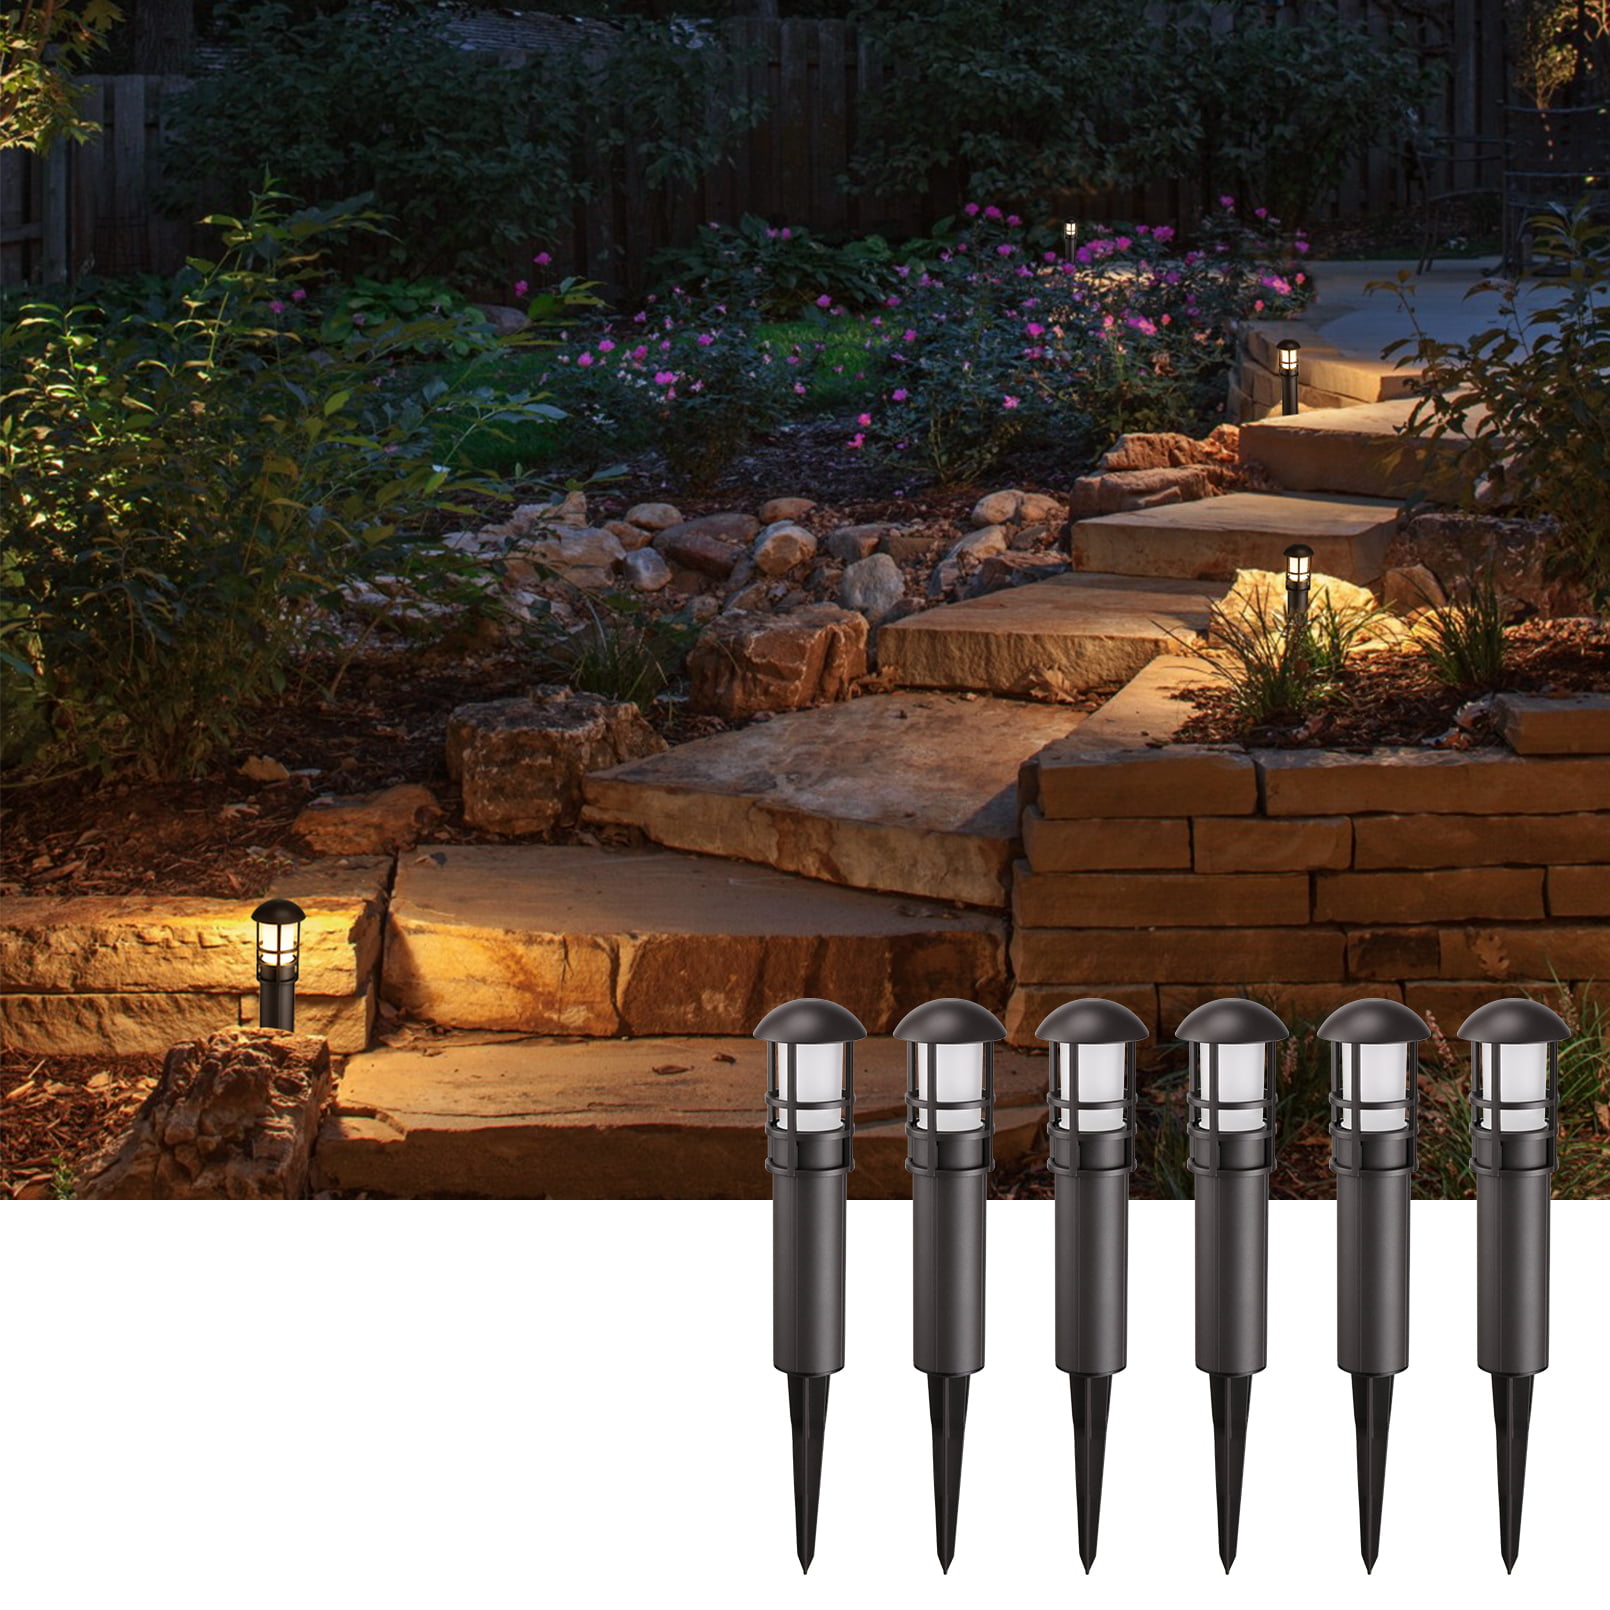 4 Pack LNDXING 3W 12V Low Voltage Outdoor LED Landscape Lights Garden Lights